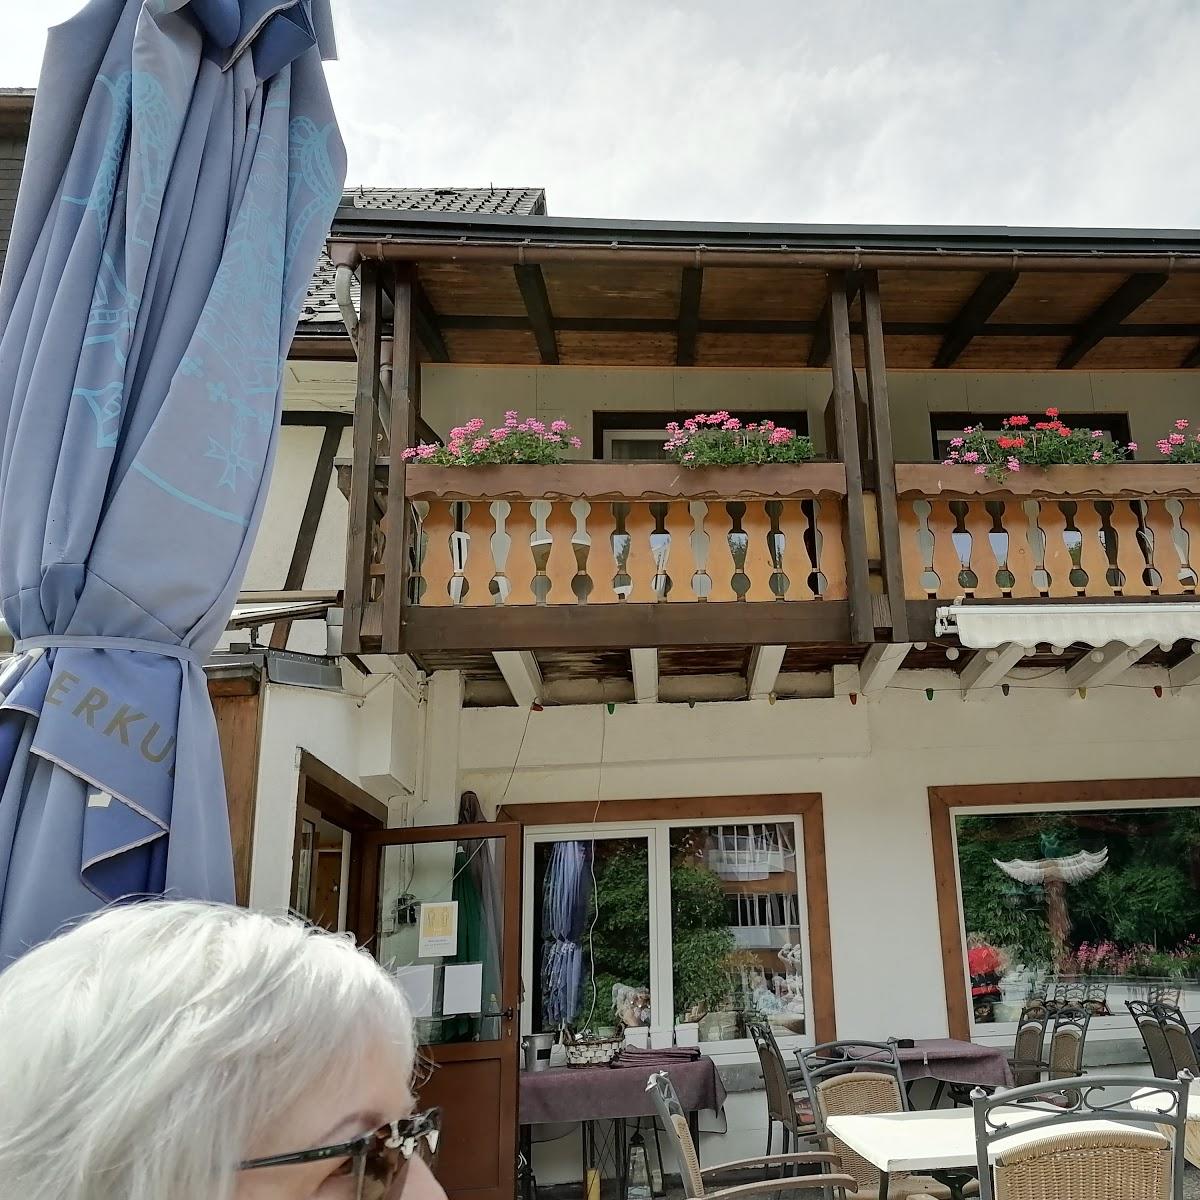 Restaurant "Gasthof zur Post Baumeister" in  Egglham